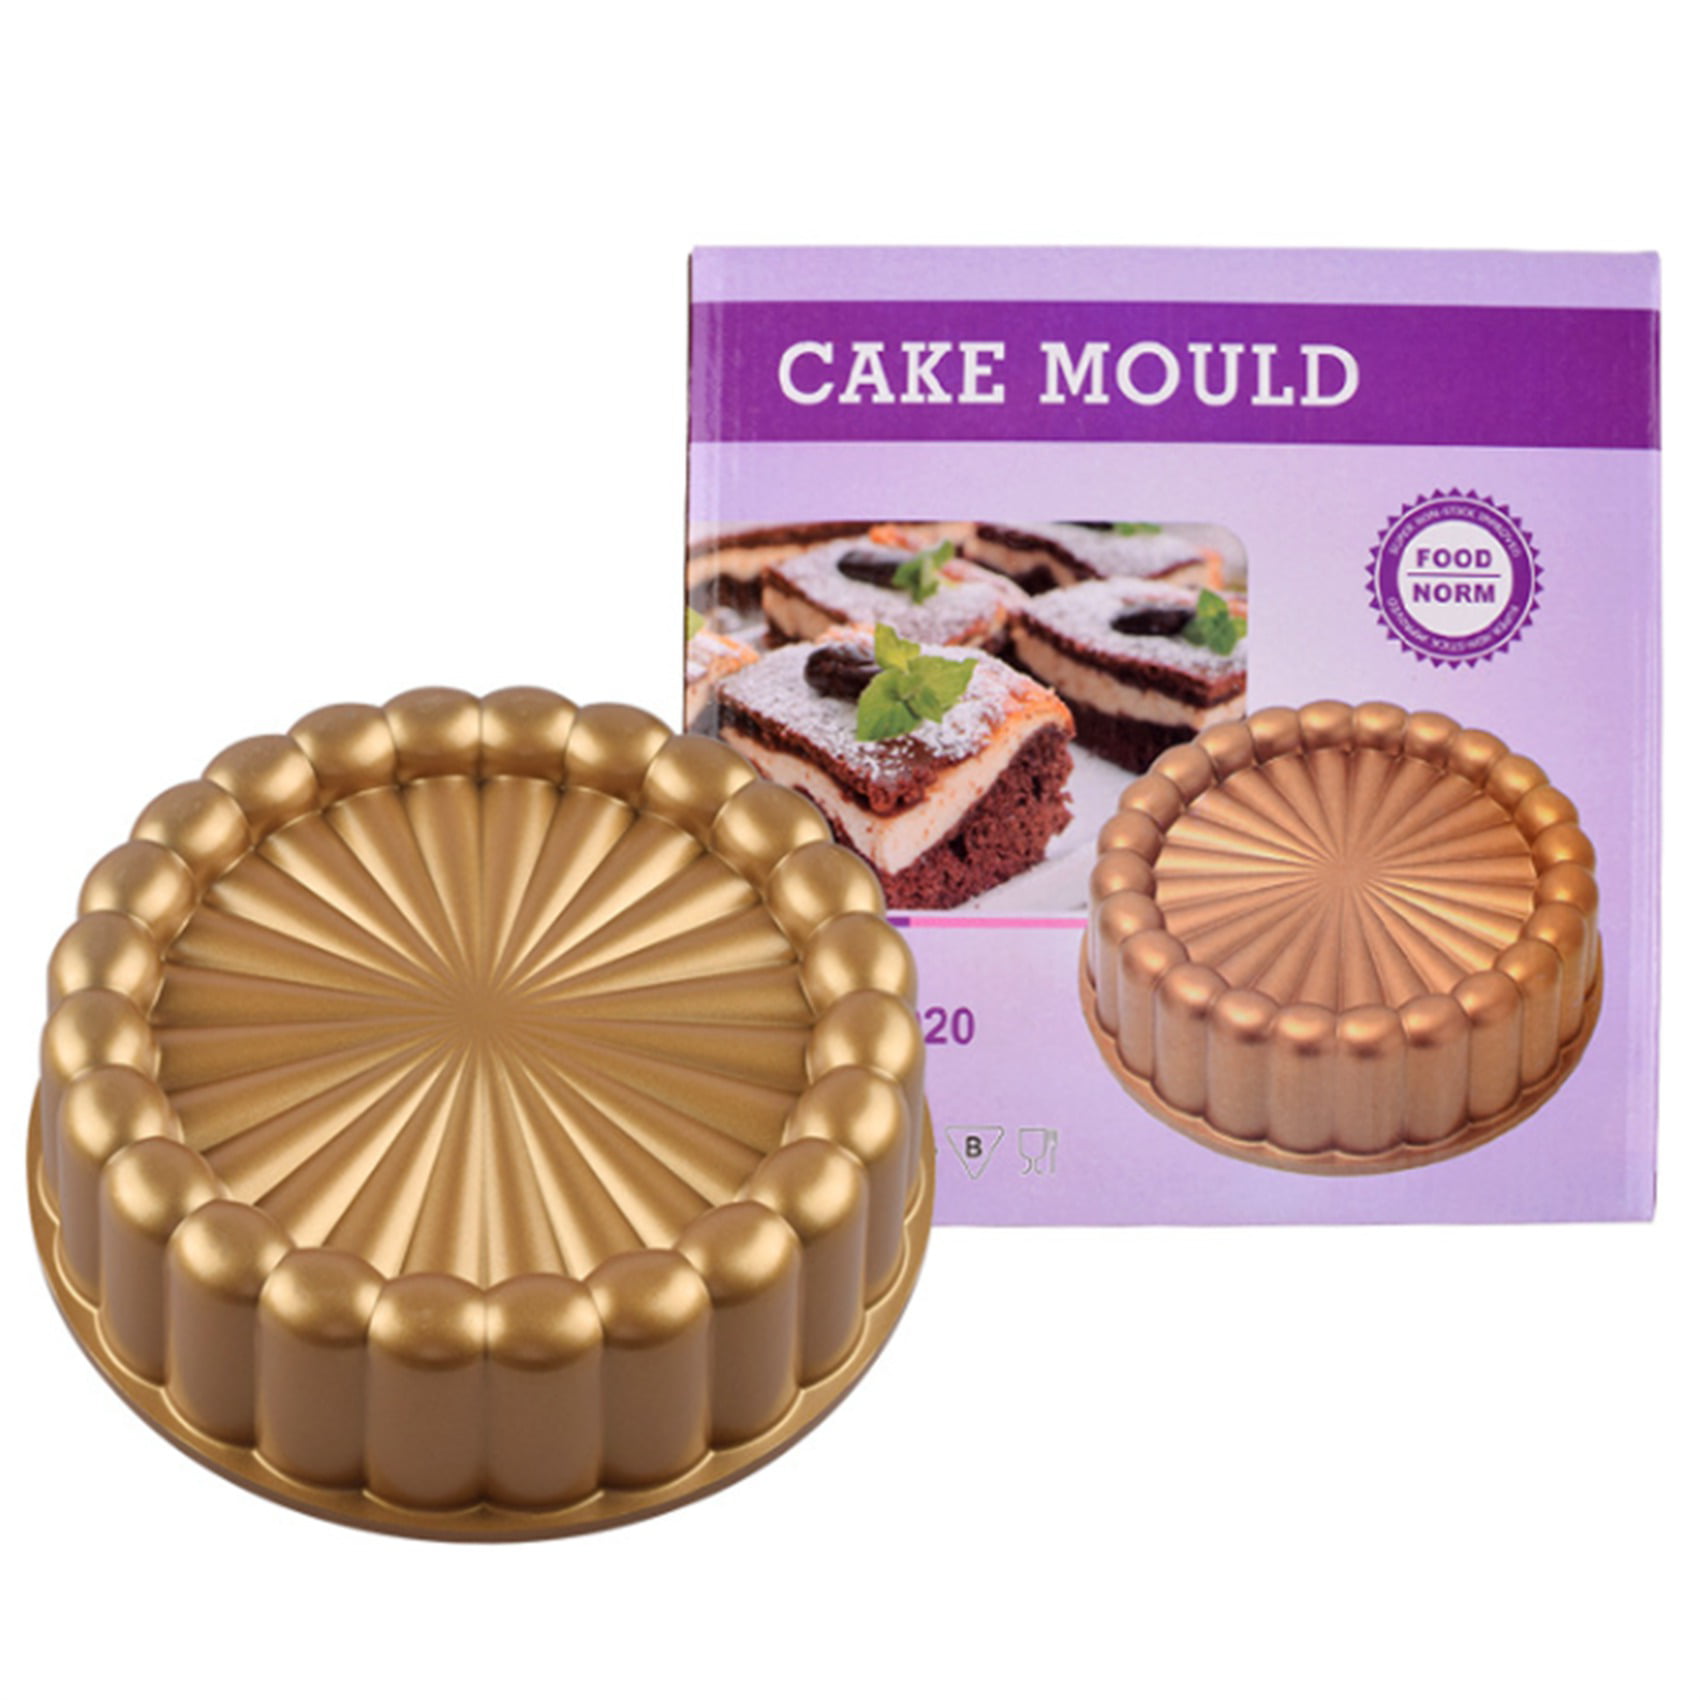 Charlotte Cake Pan,Nordic Ware Charlotte Cake Pan Bundt Pan Nonstick, 10  Inch Cake Pan for Baking Fluted Cake Pan Mold